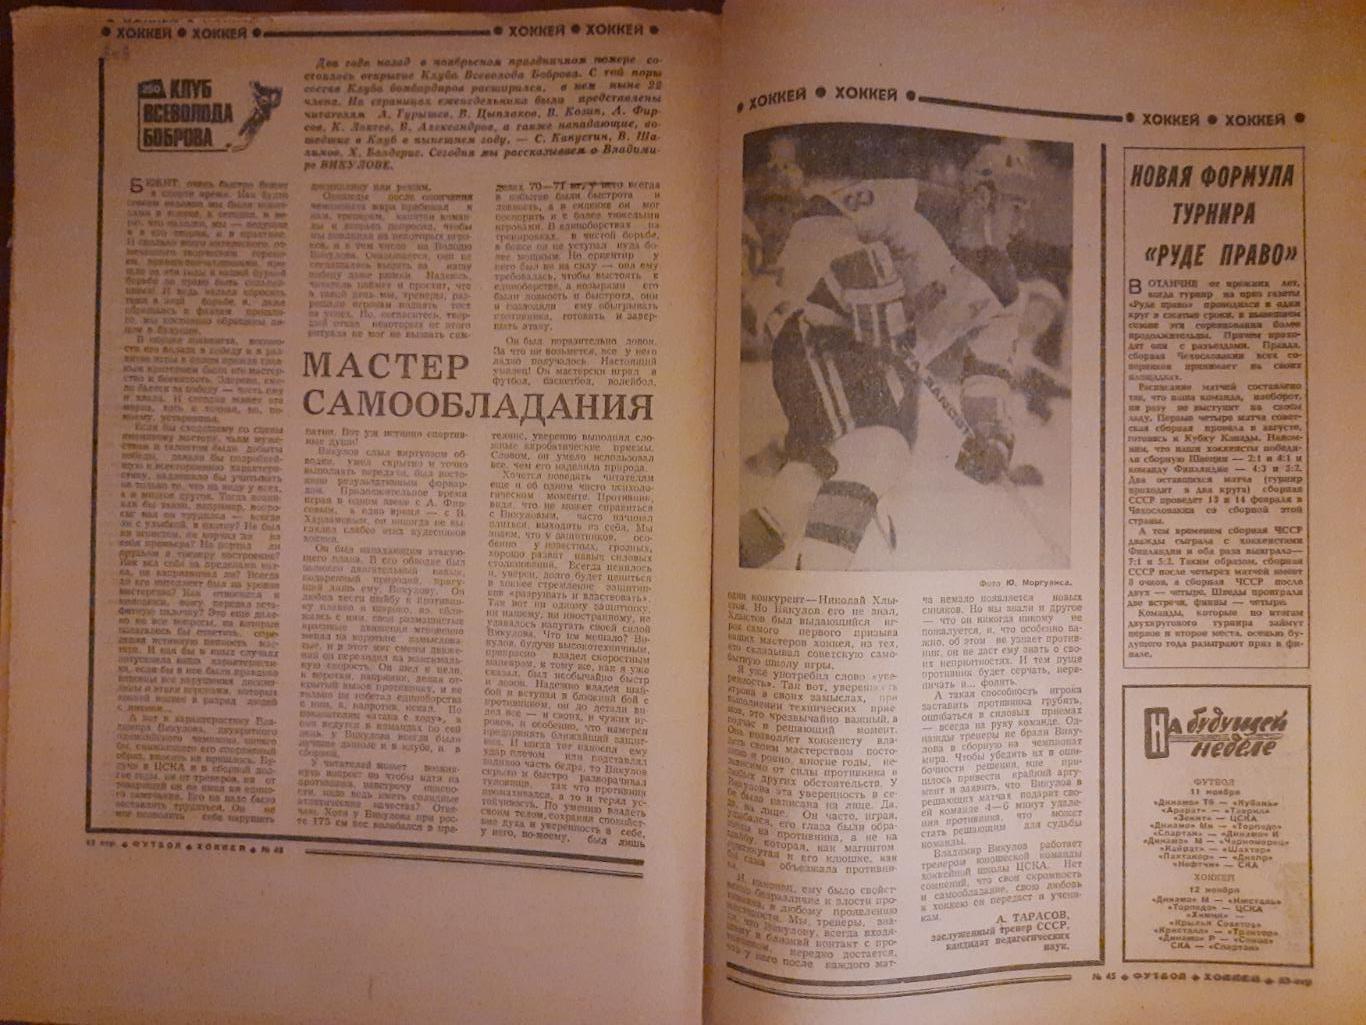 еженедельник футбол-хоккей #45,1981 5